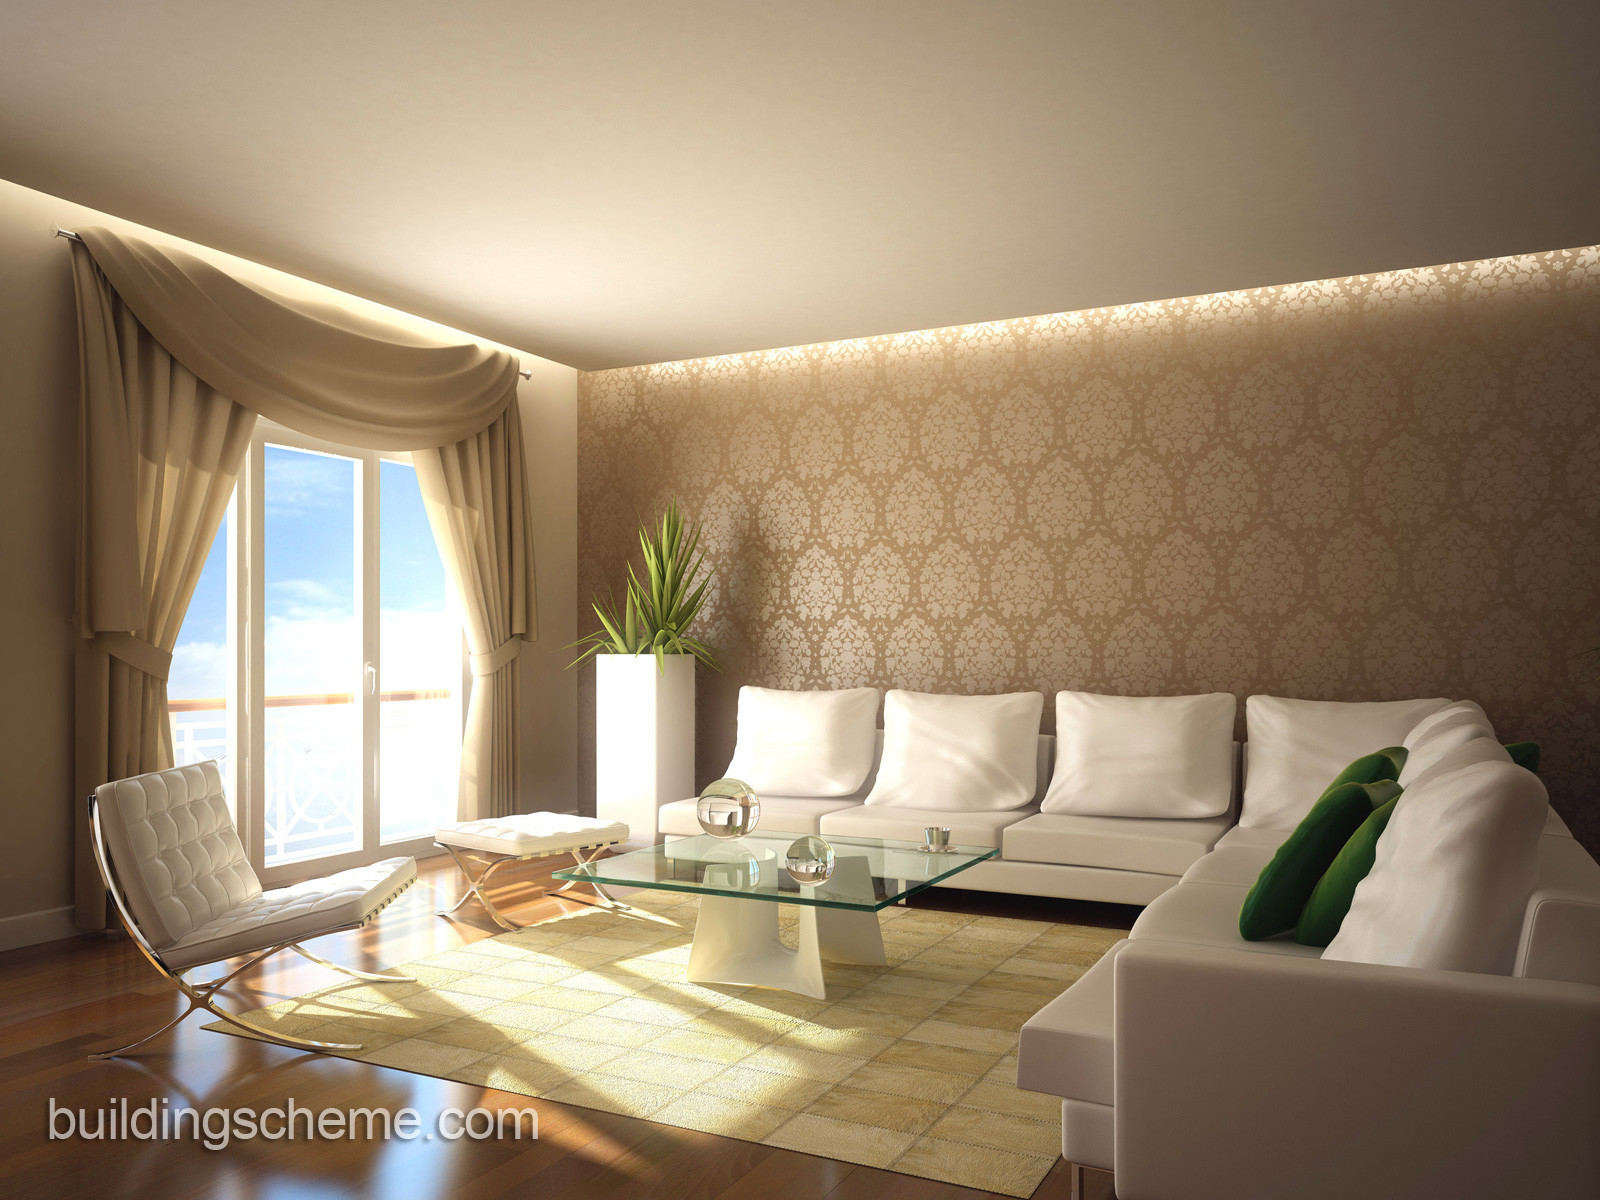 Living Room Wallpaper Ideas
 Surprising Wallpaper Design for Living Room – HomesFeed